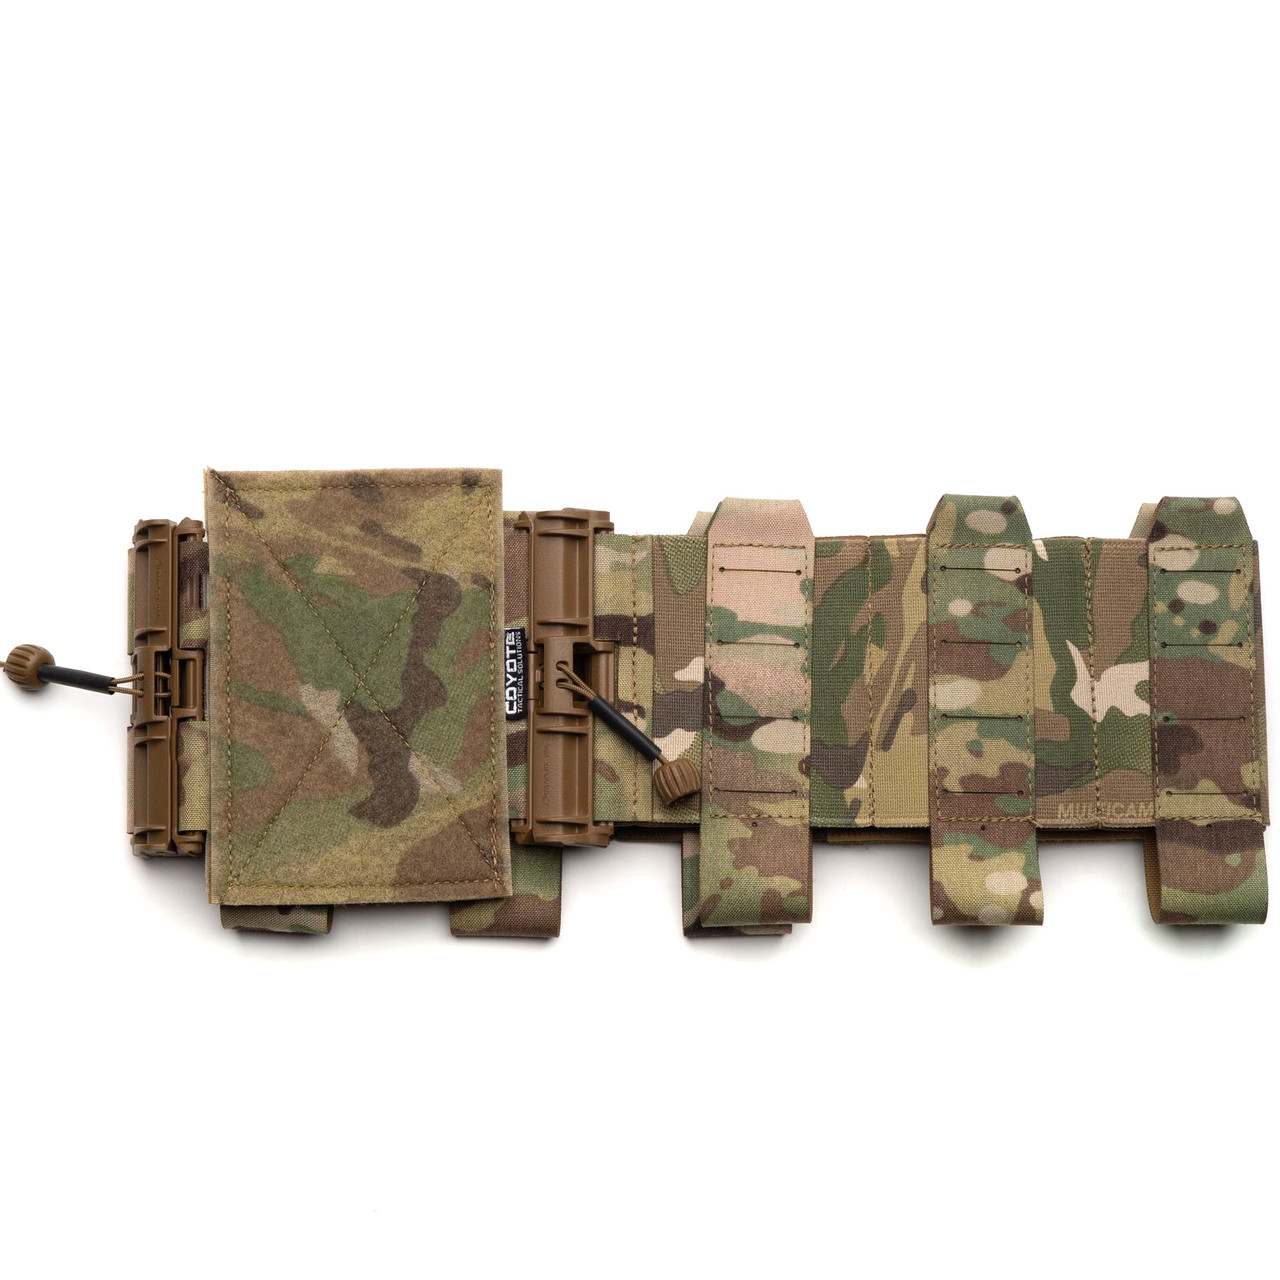 XSm-Sm Made in USA Soldier Plate Carrier System-Cummerbund Pair 1 pair